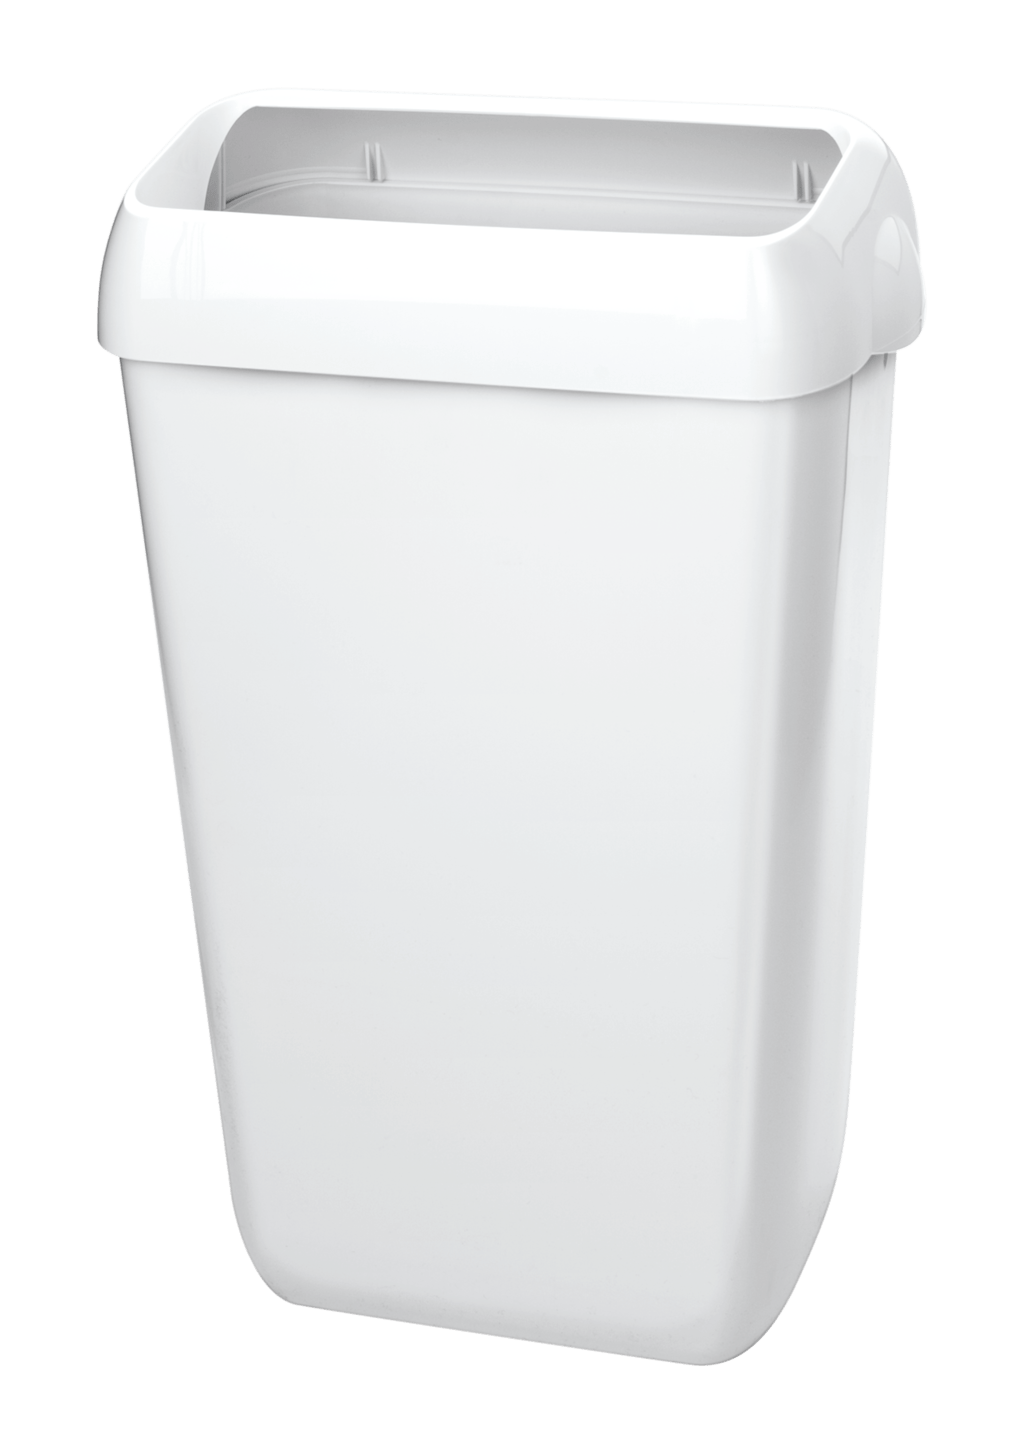 RUCK - Abfallbehälter aus Kunststoff in weiß